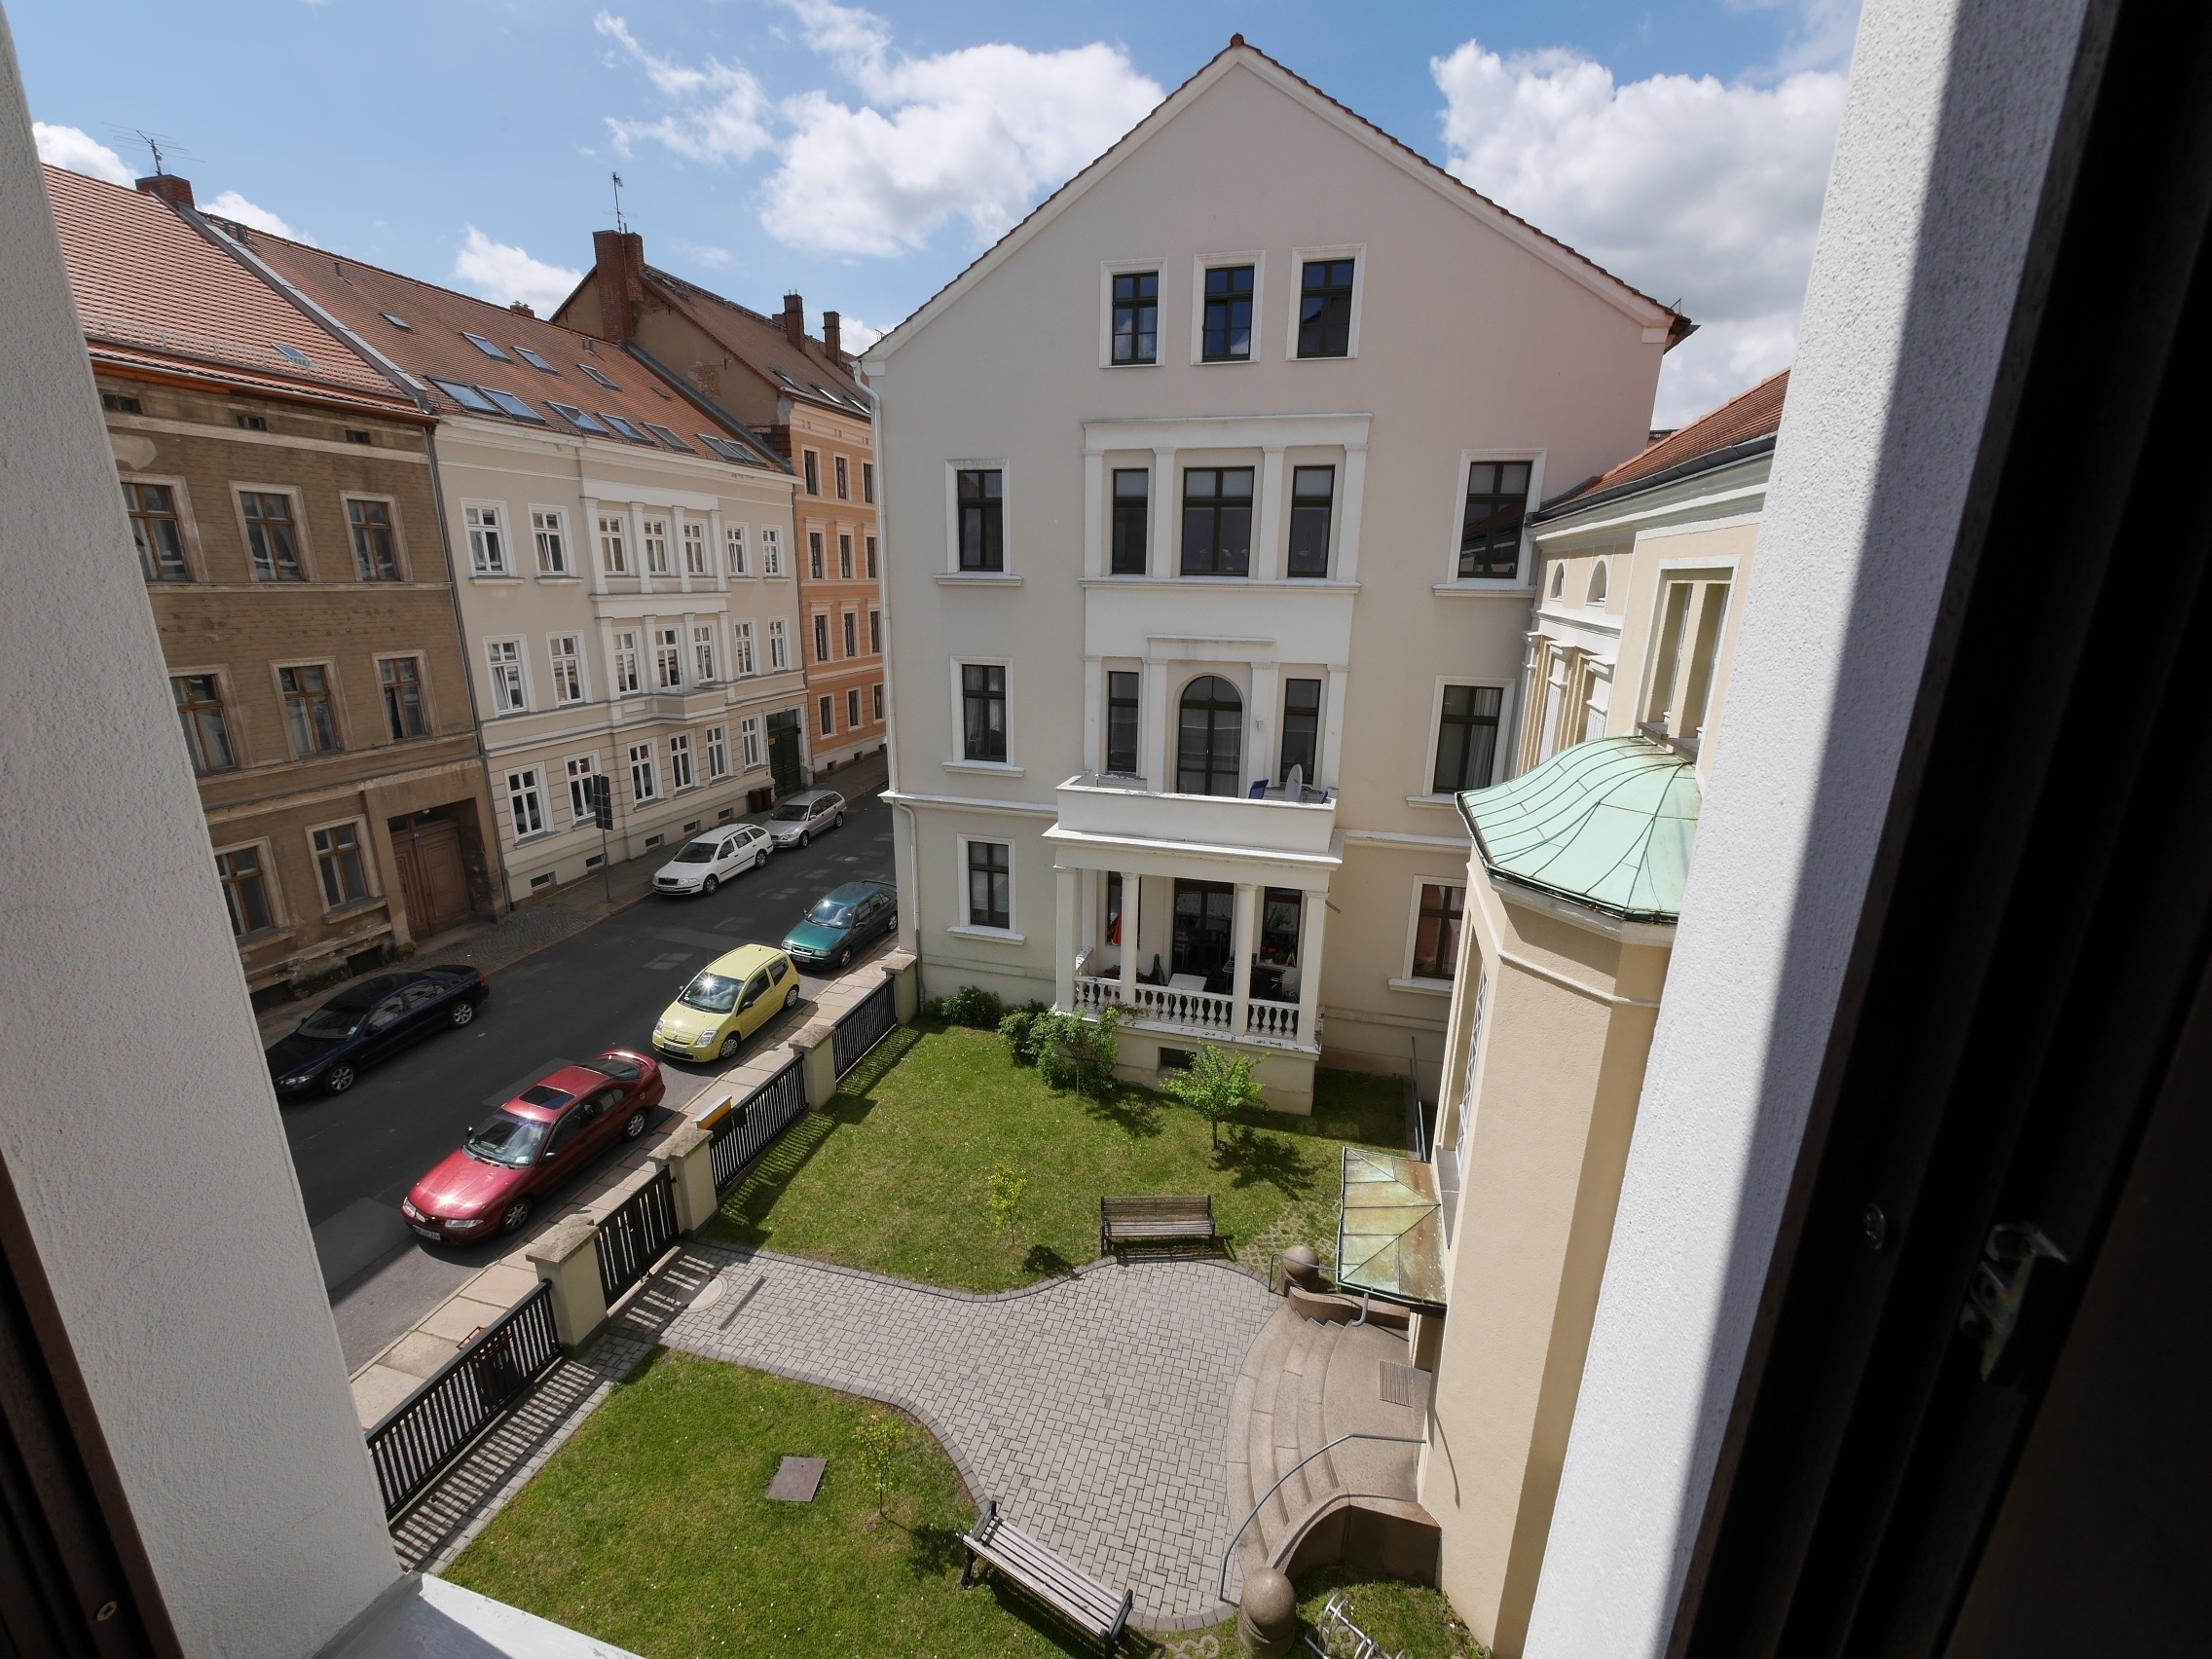 4-Raum Wohnung in Gartenstraße 8 in Görlitz zu mieten.